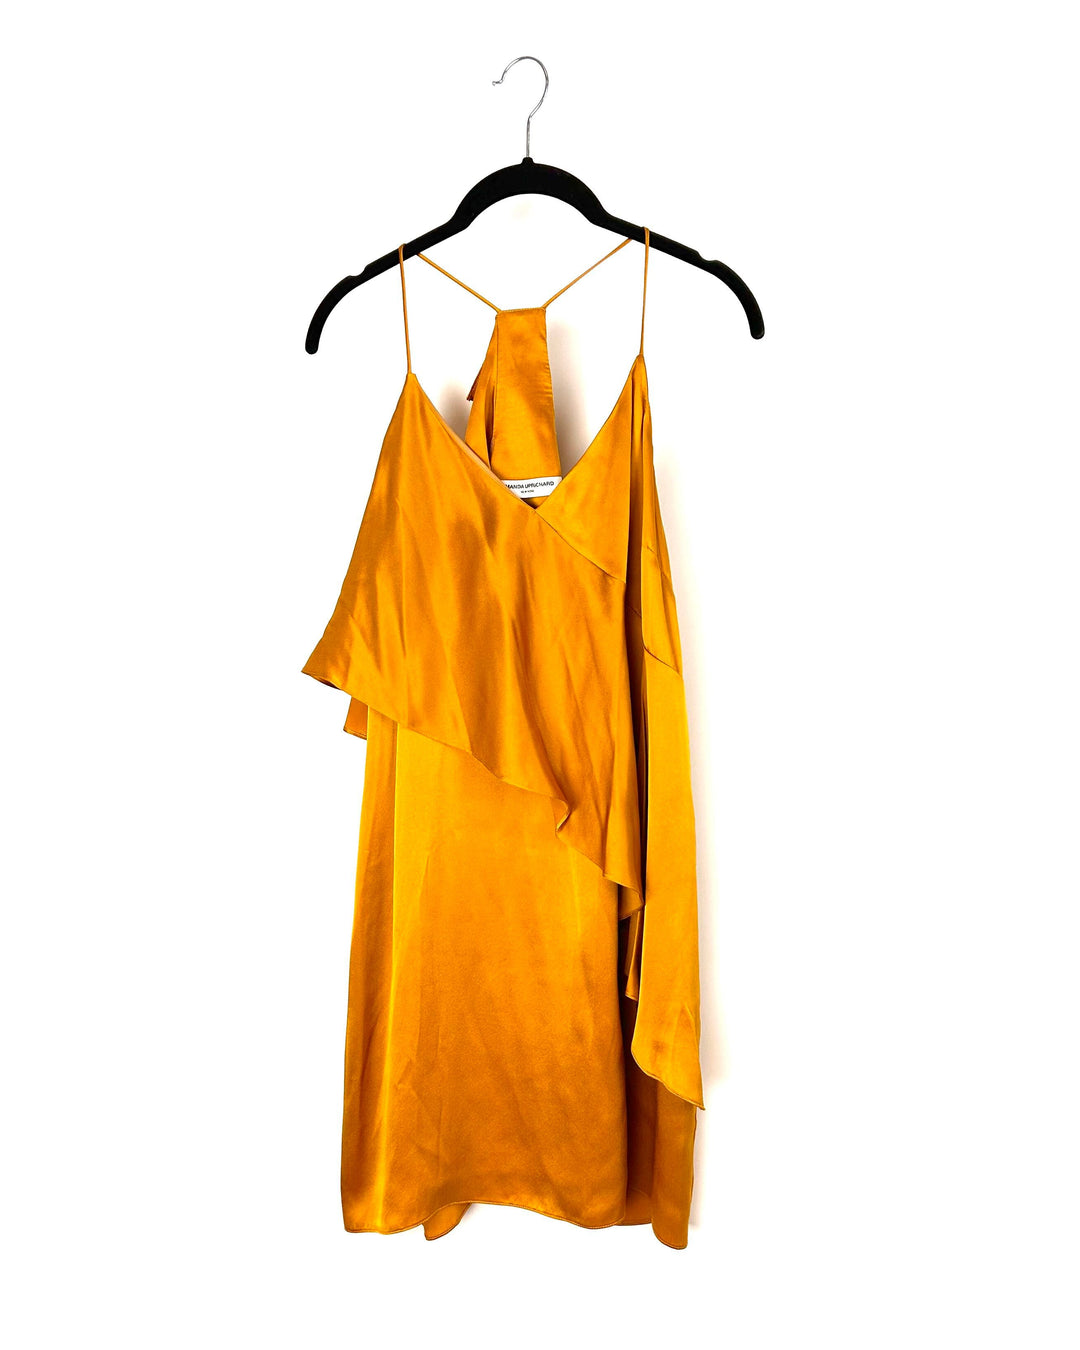 Mustard Yellow Dress - Size 4/6